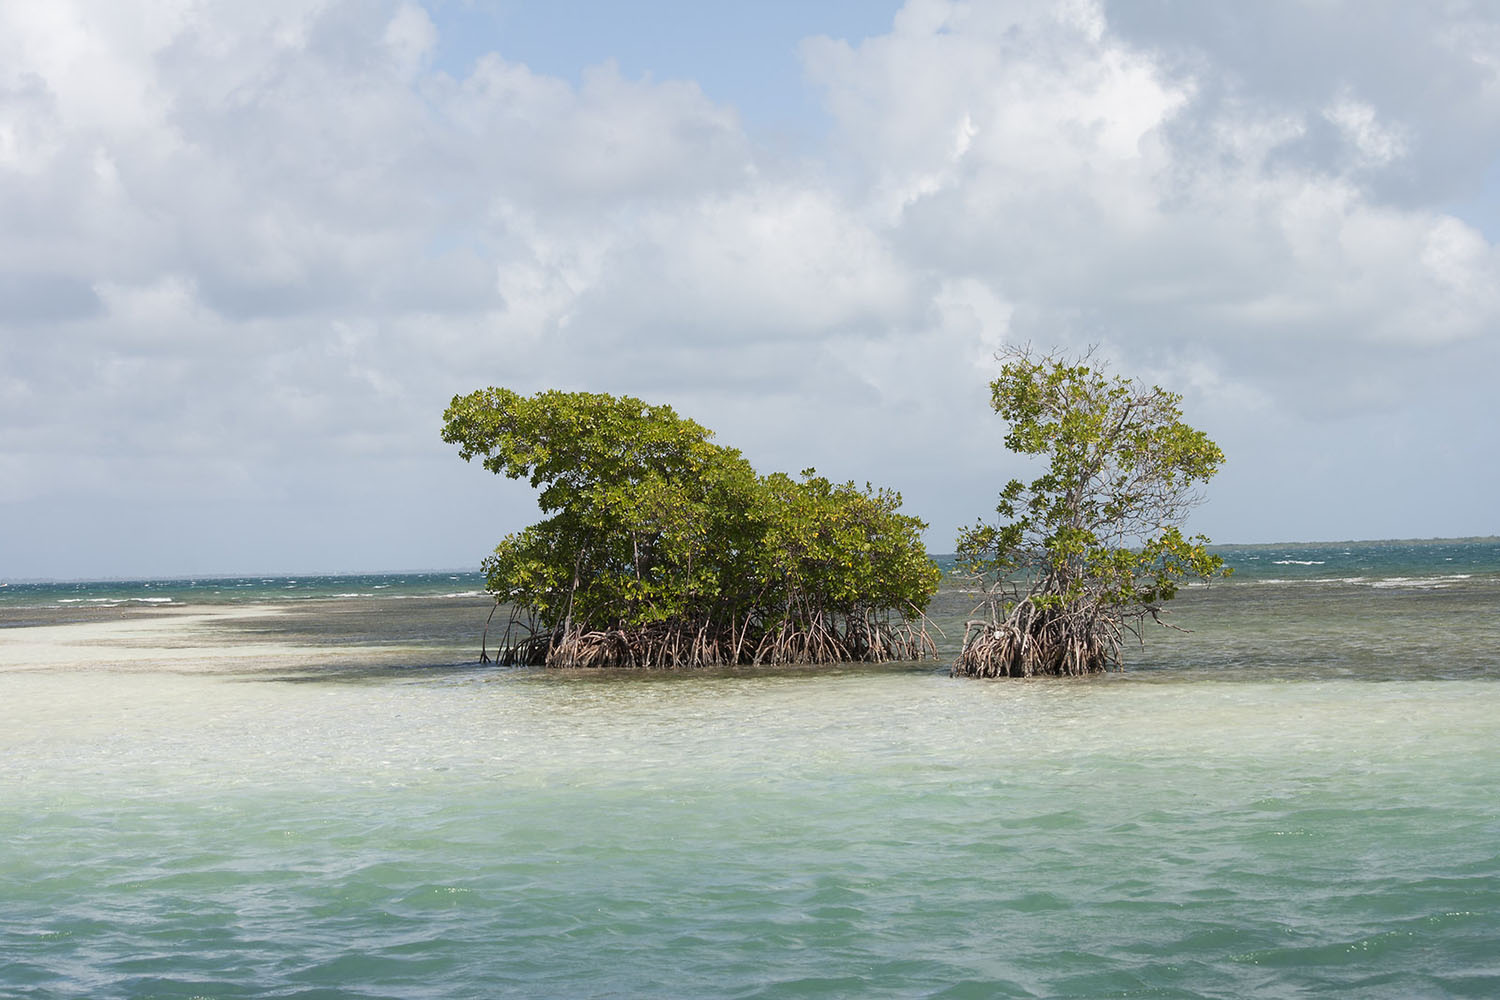 Cétacés et faune marine de Guadeloupe, voyage scientifique. ilot et mangrove